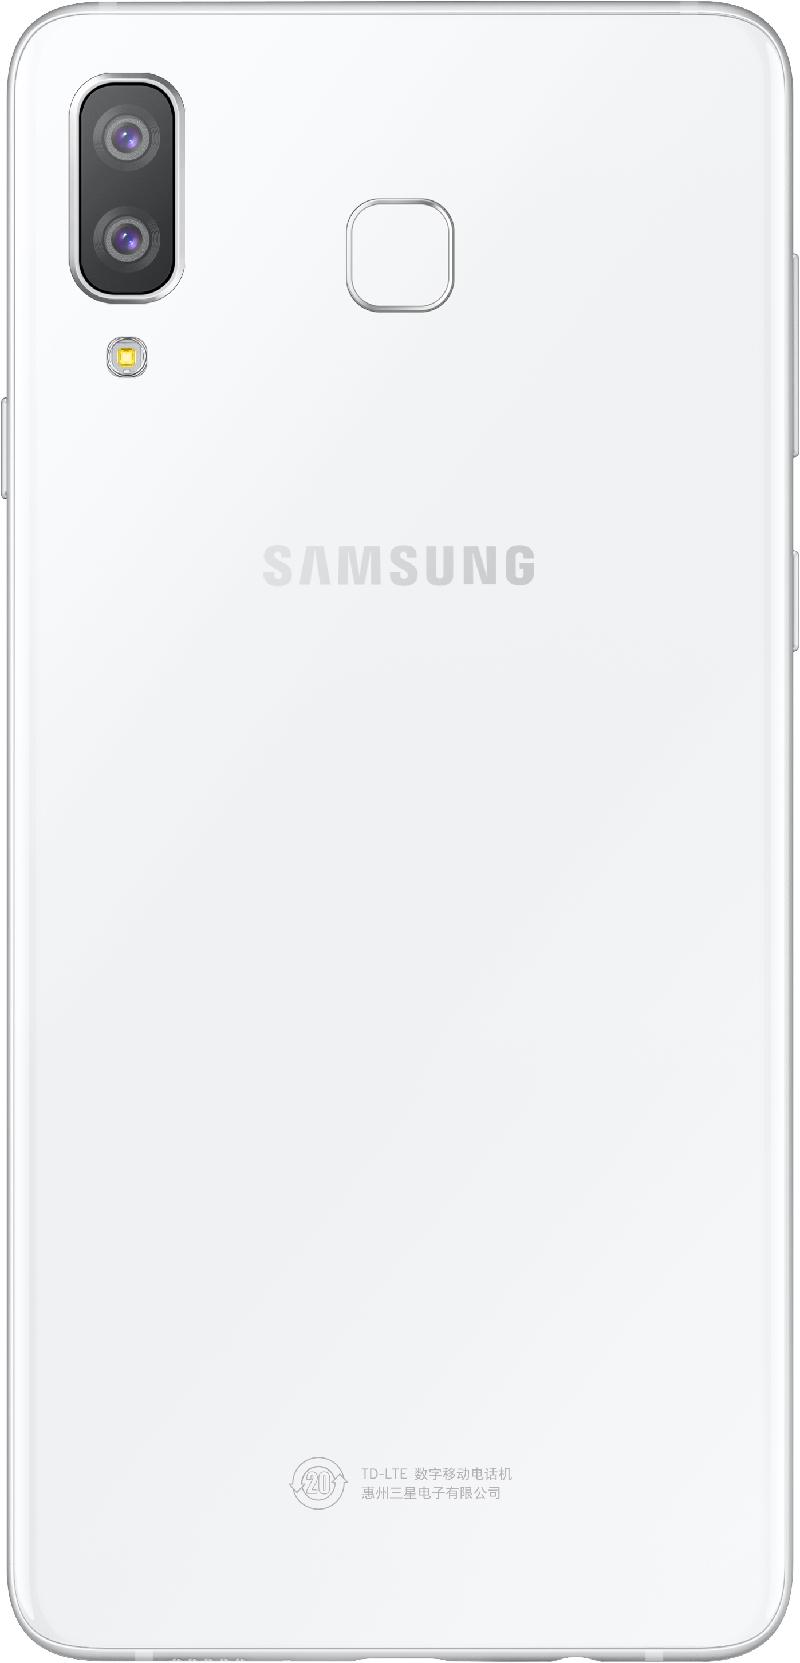 Galaxy-A8_White_4.jpg